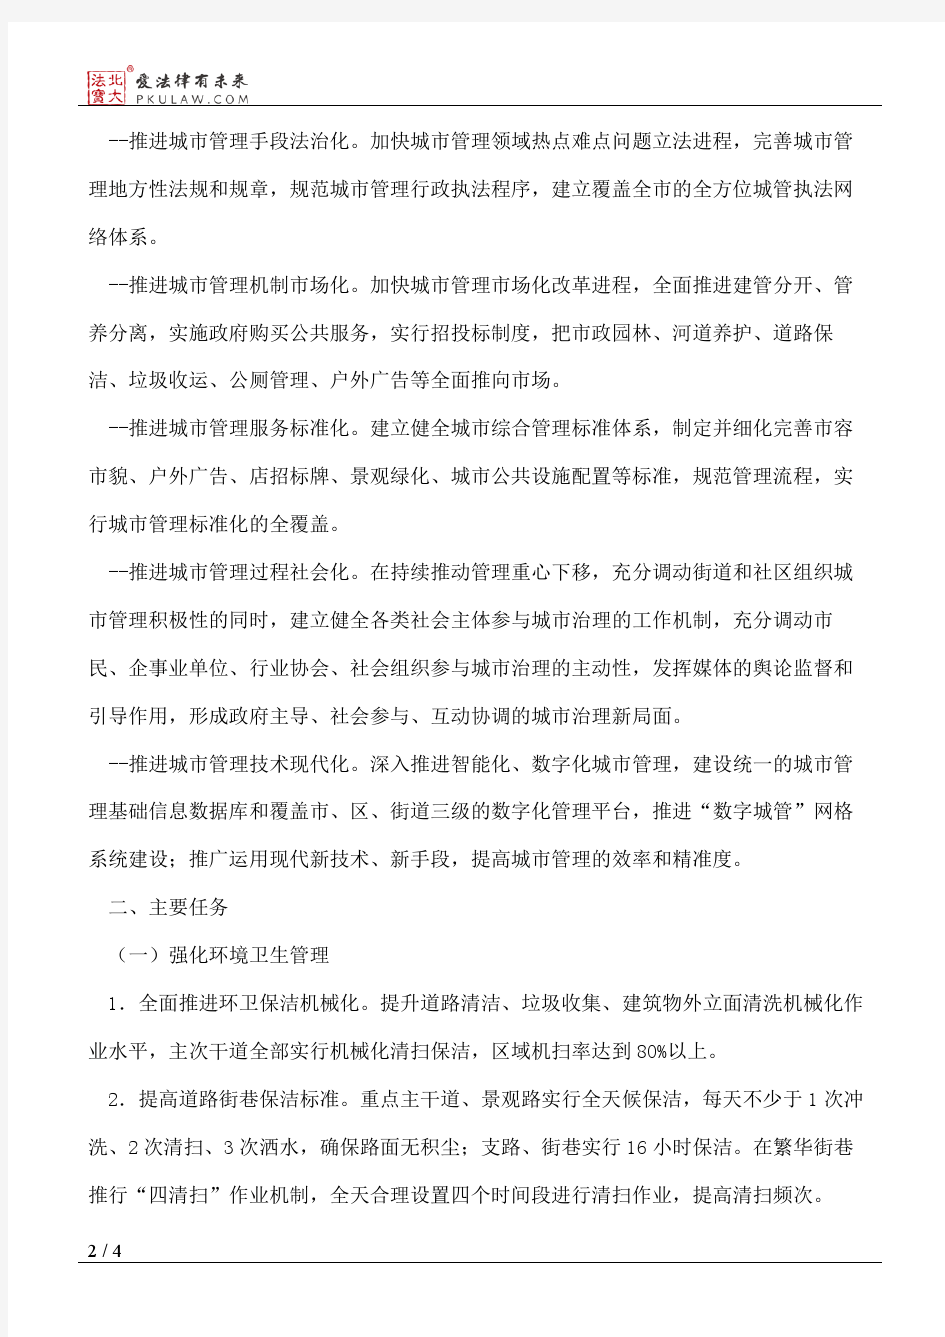 南京市人民政府关于建立健全城市管理长效机制的意见